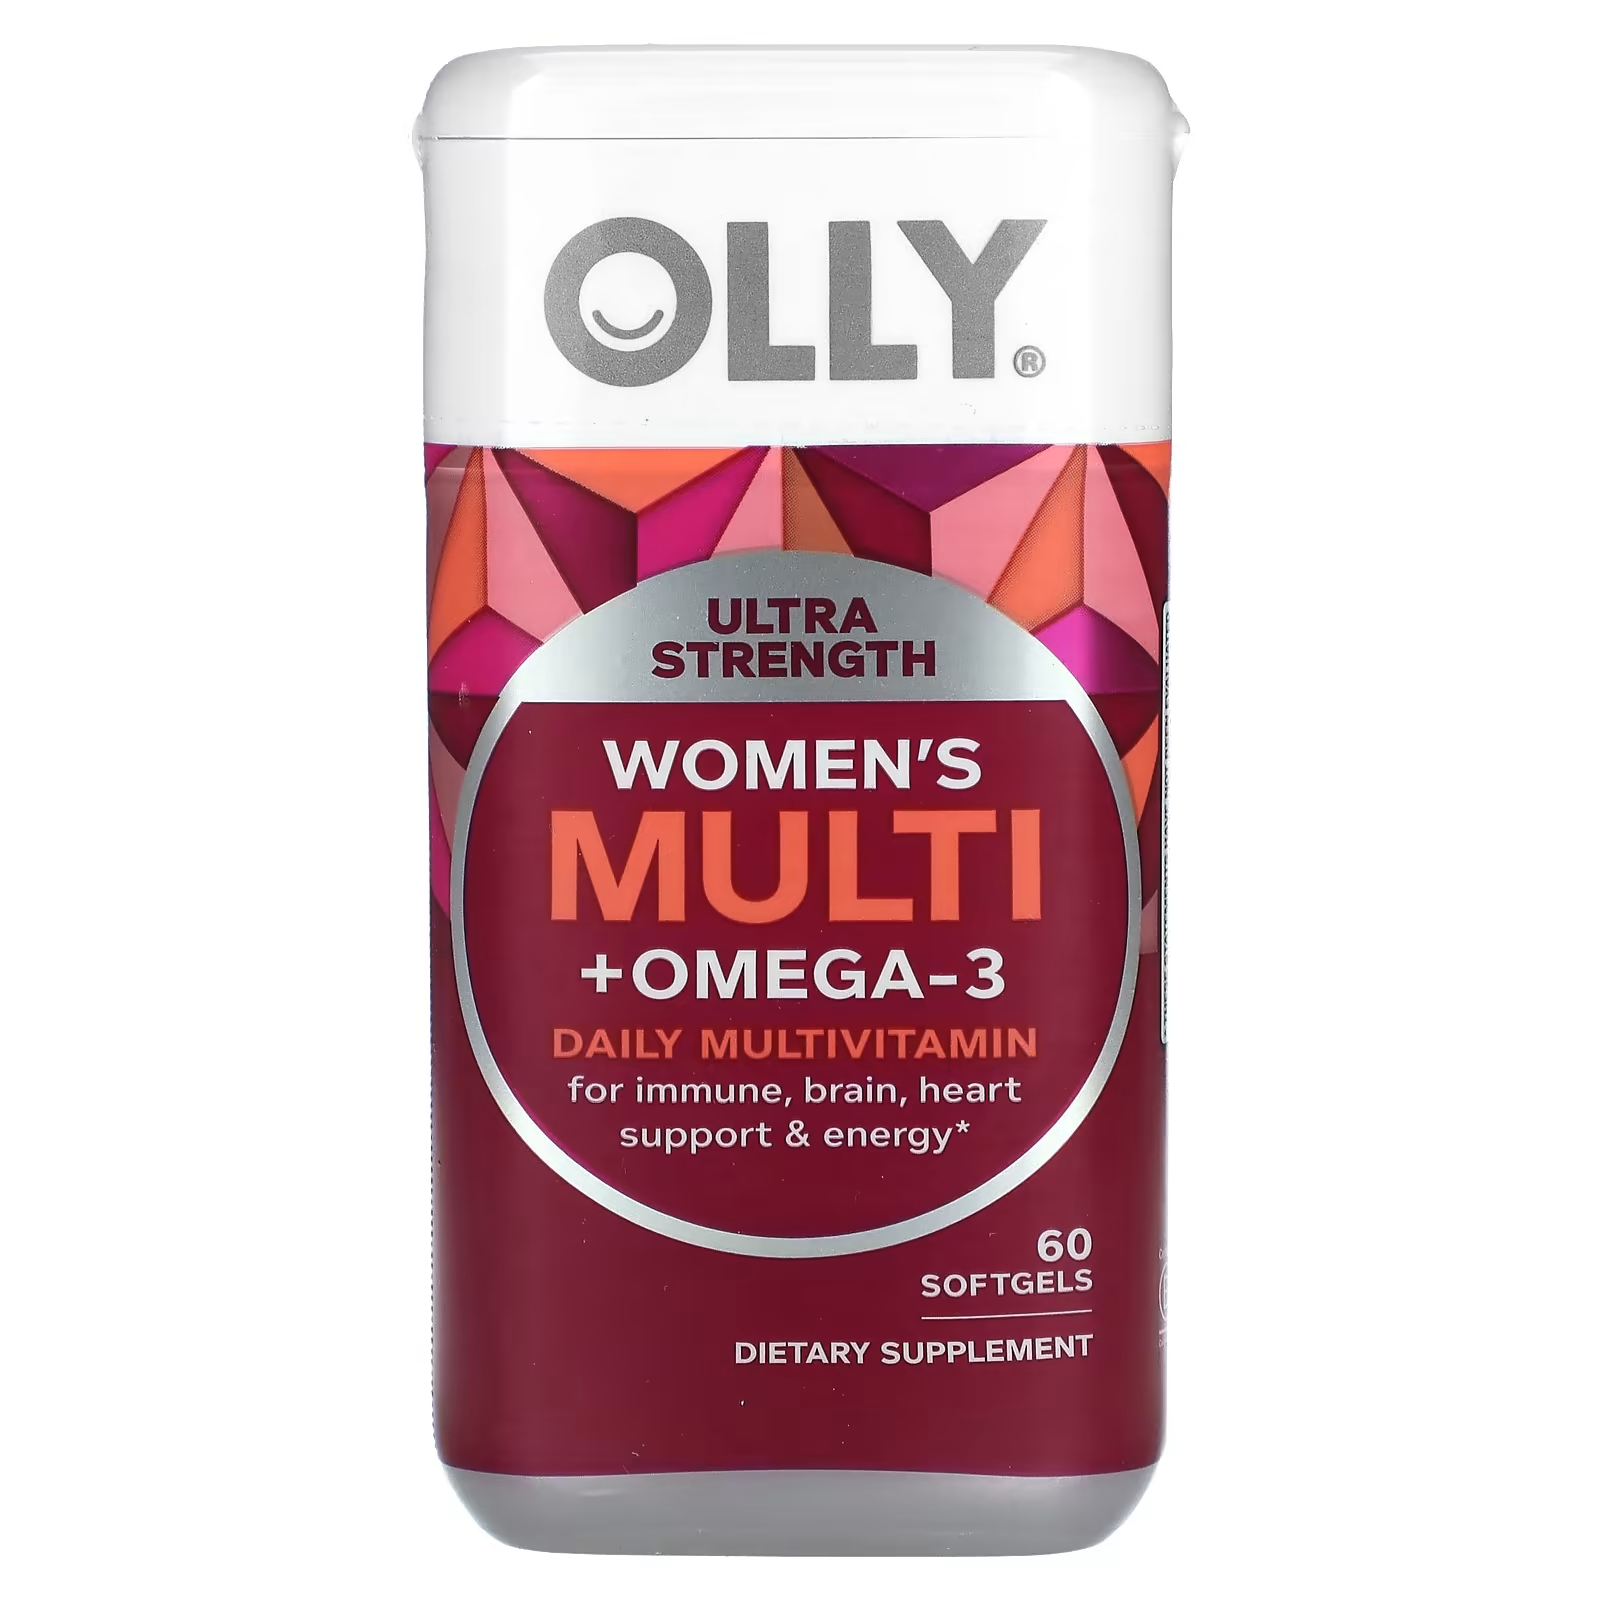 Мультивитамины женские Olly + Омега-3 для ежедневного использования, 60 мягких таблеток usn north america inc мультивитамины для ежедневного применения 60 таблеток